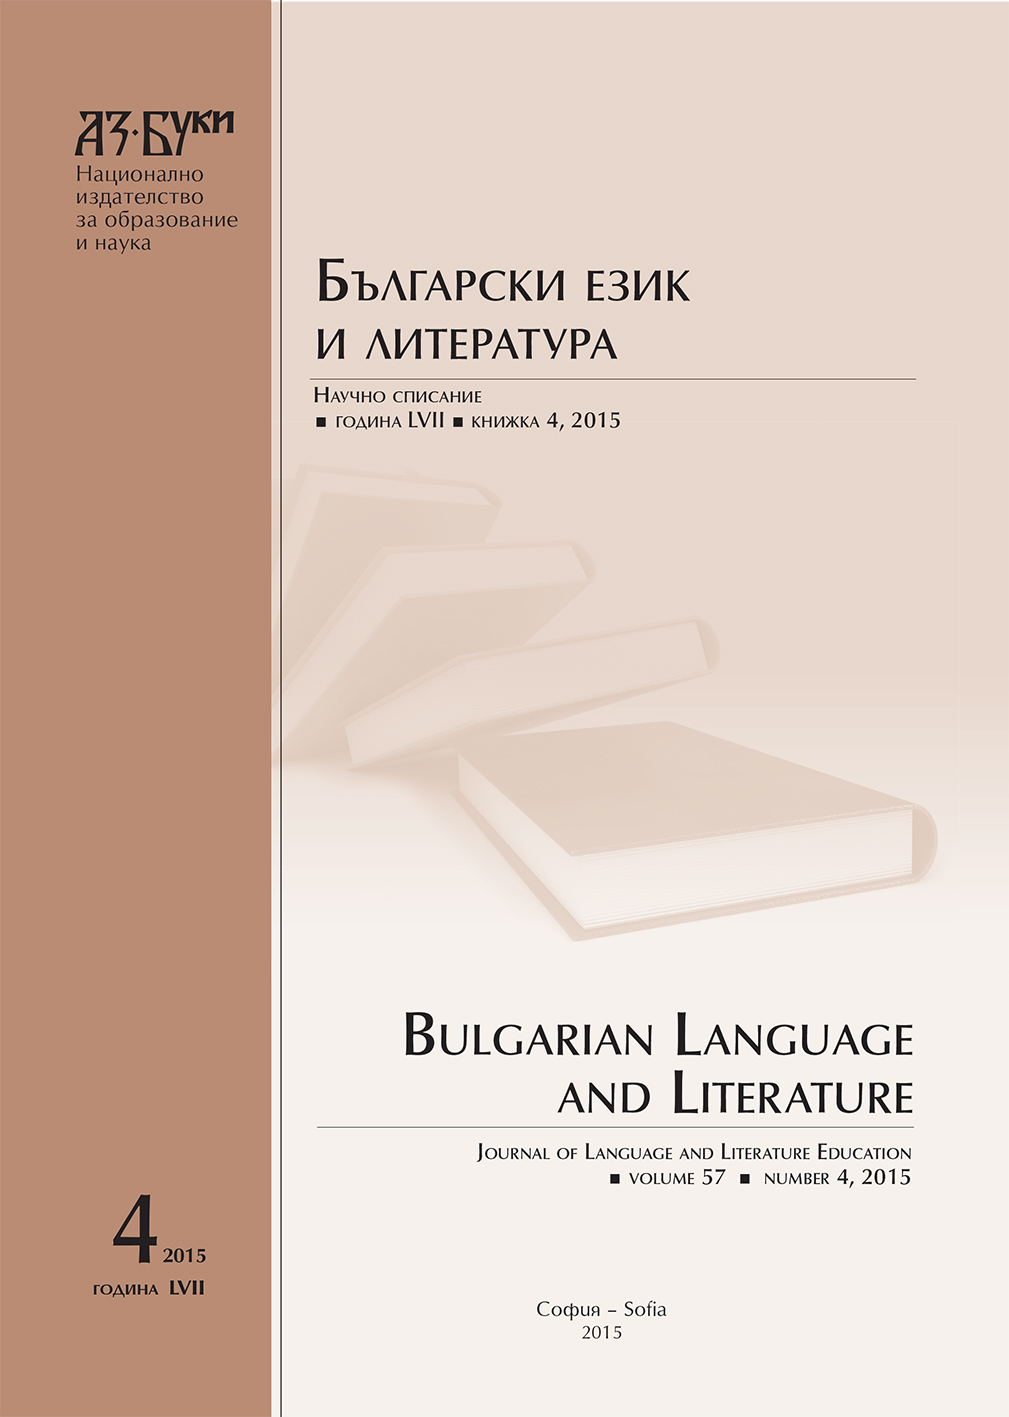 Учебни програми за изучаване на български език, литература и народознание в българското училище за роден език в Будапеща